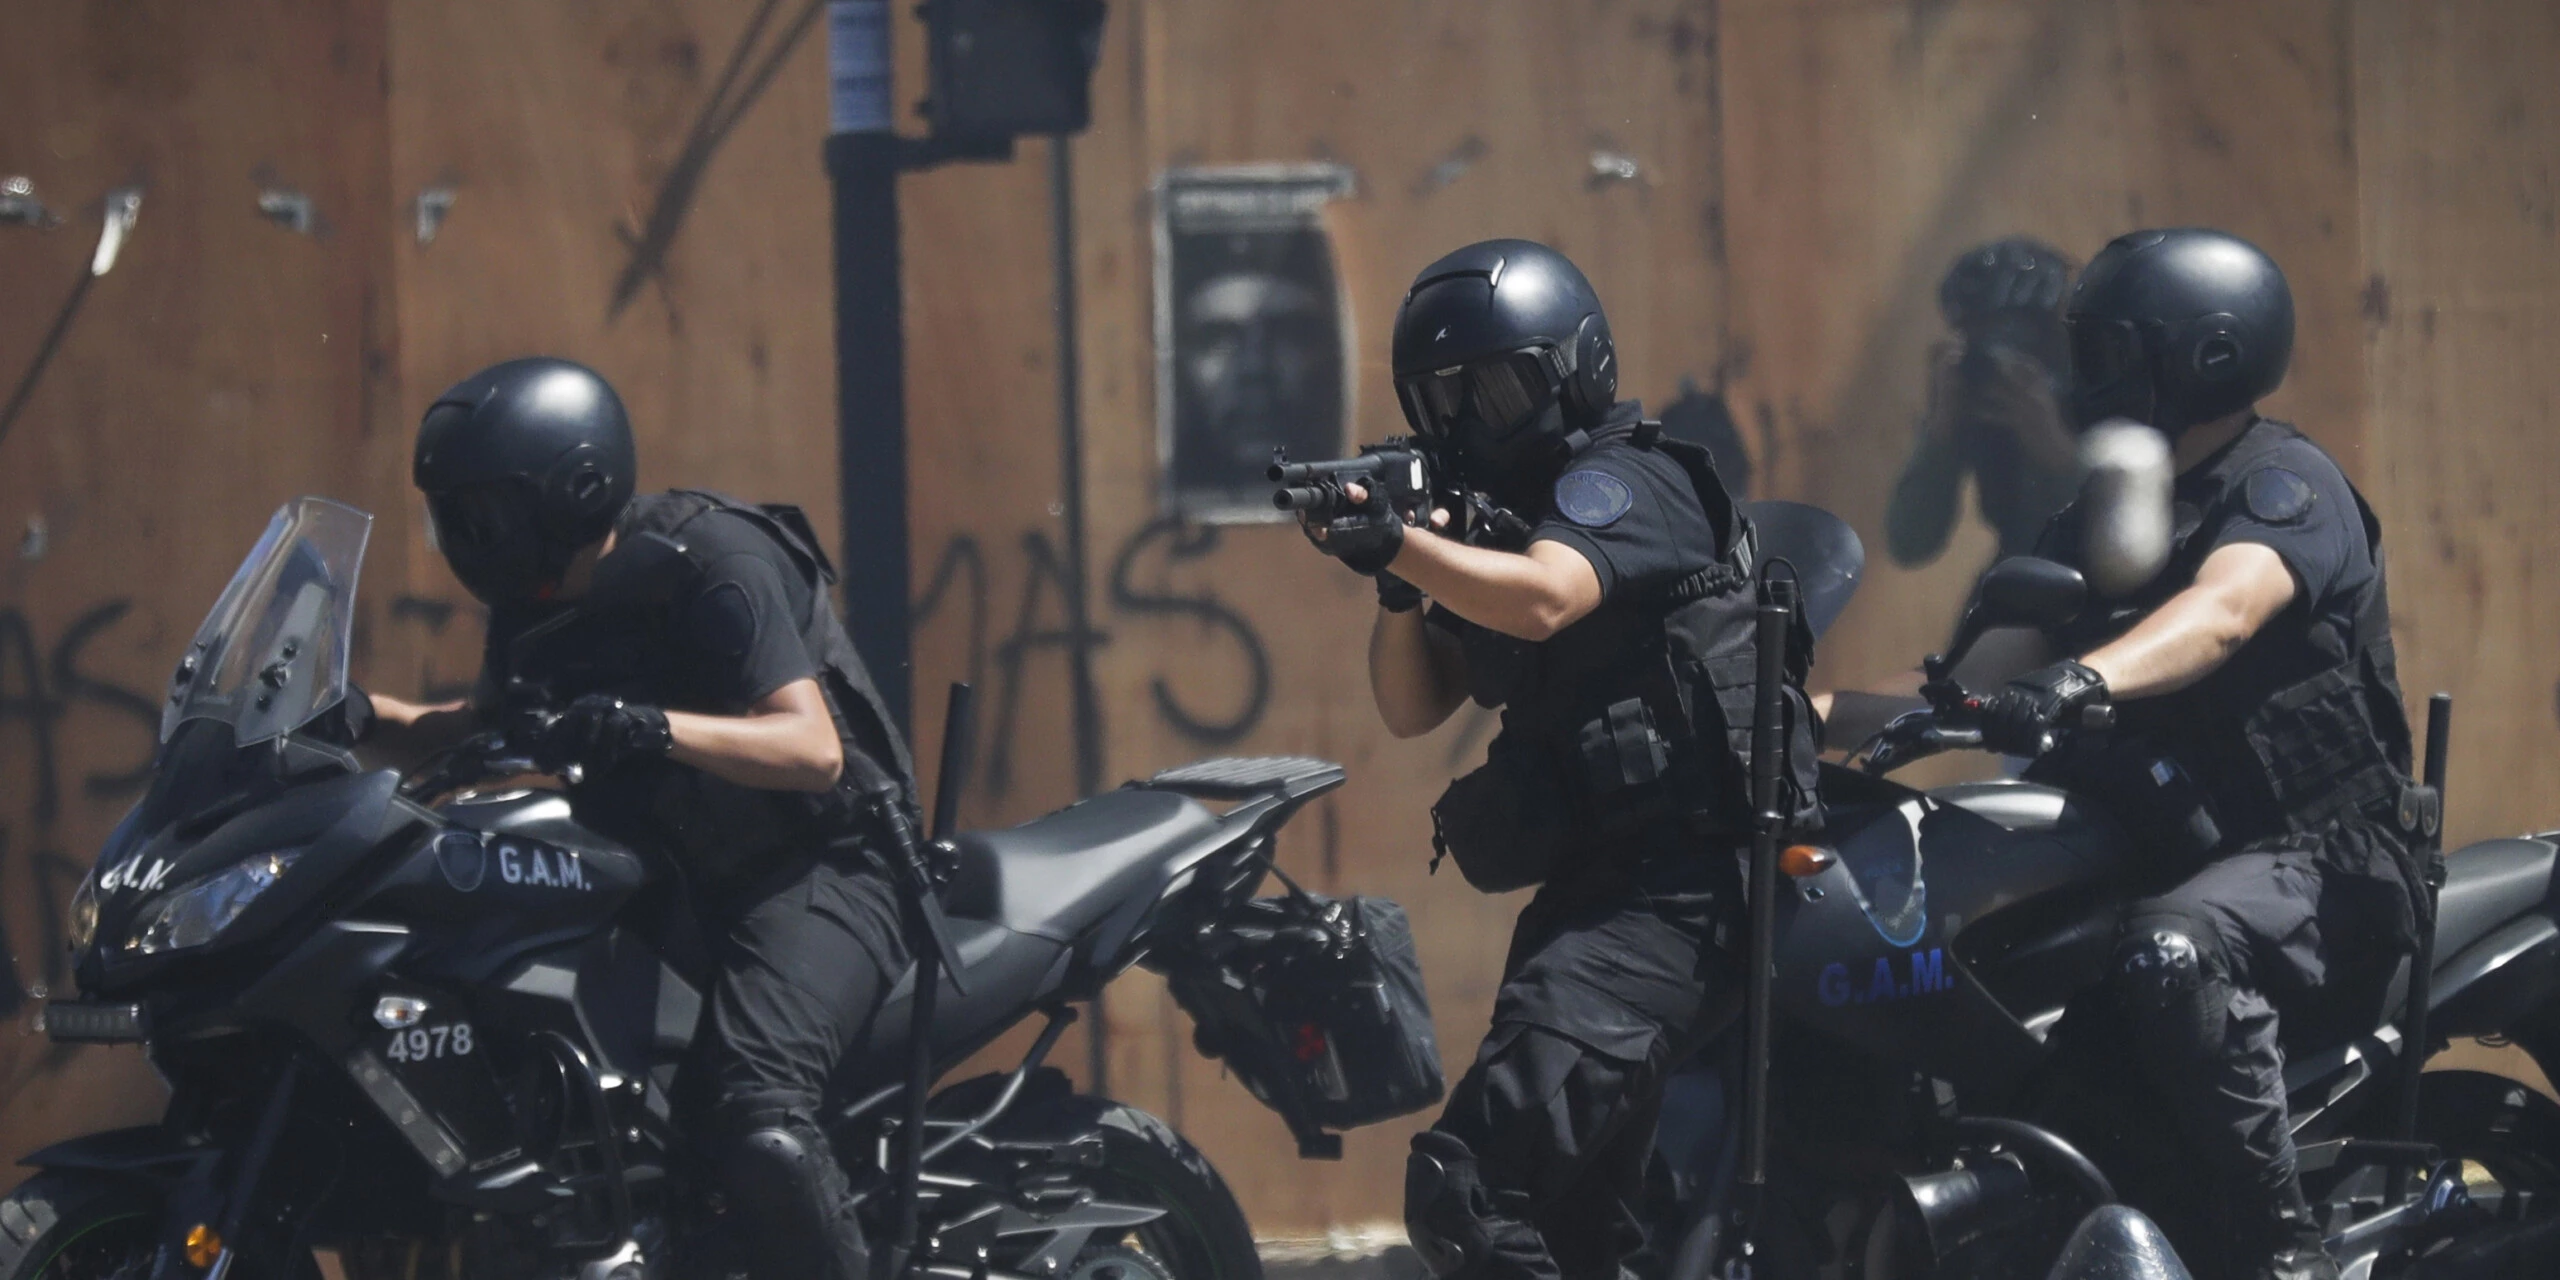 Equipe da série 'Cidade de Deus' relata agressões de policiais